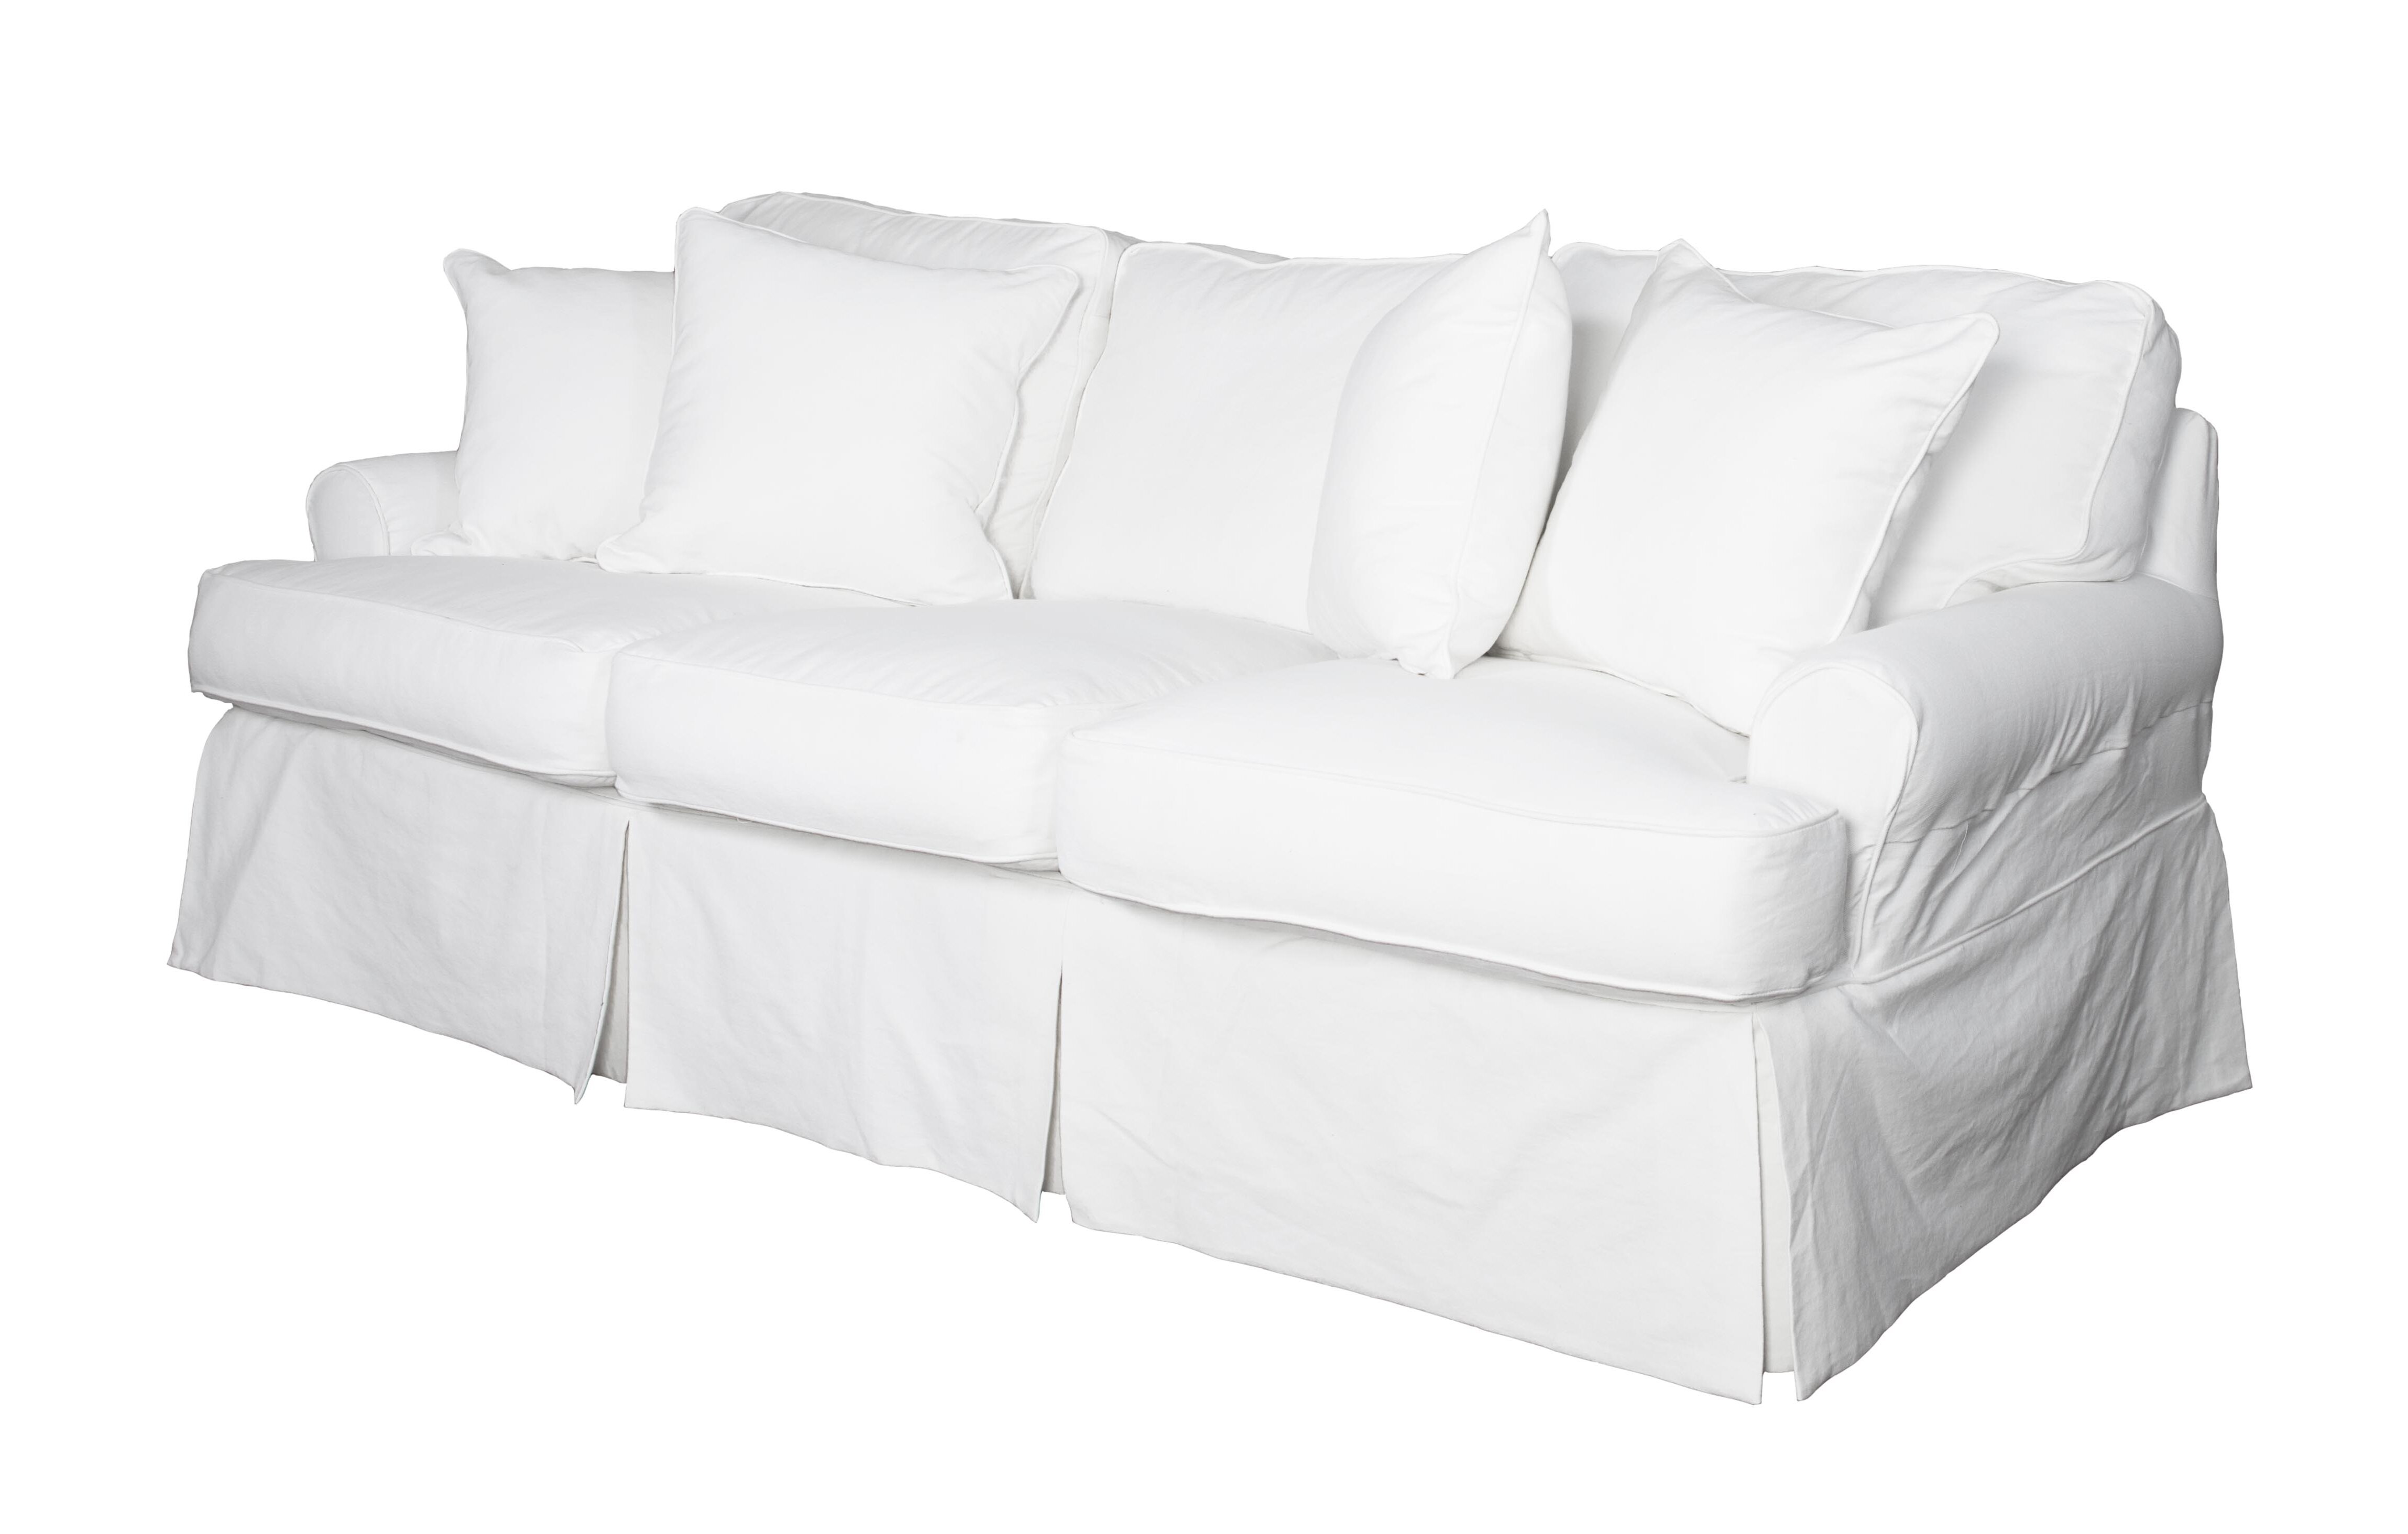 3 cushion sofa dimensions